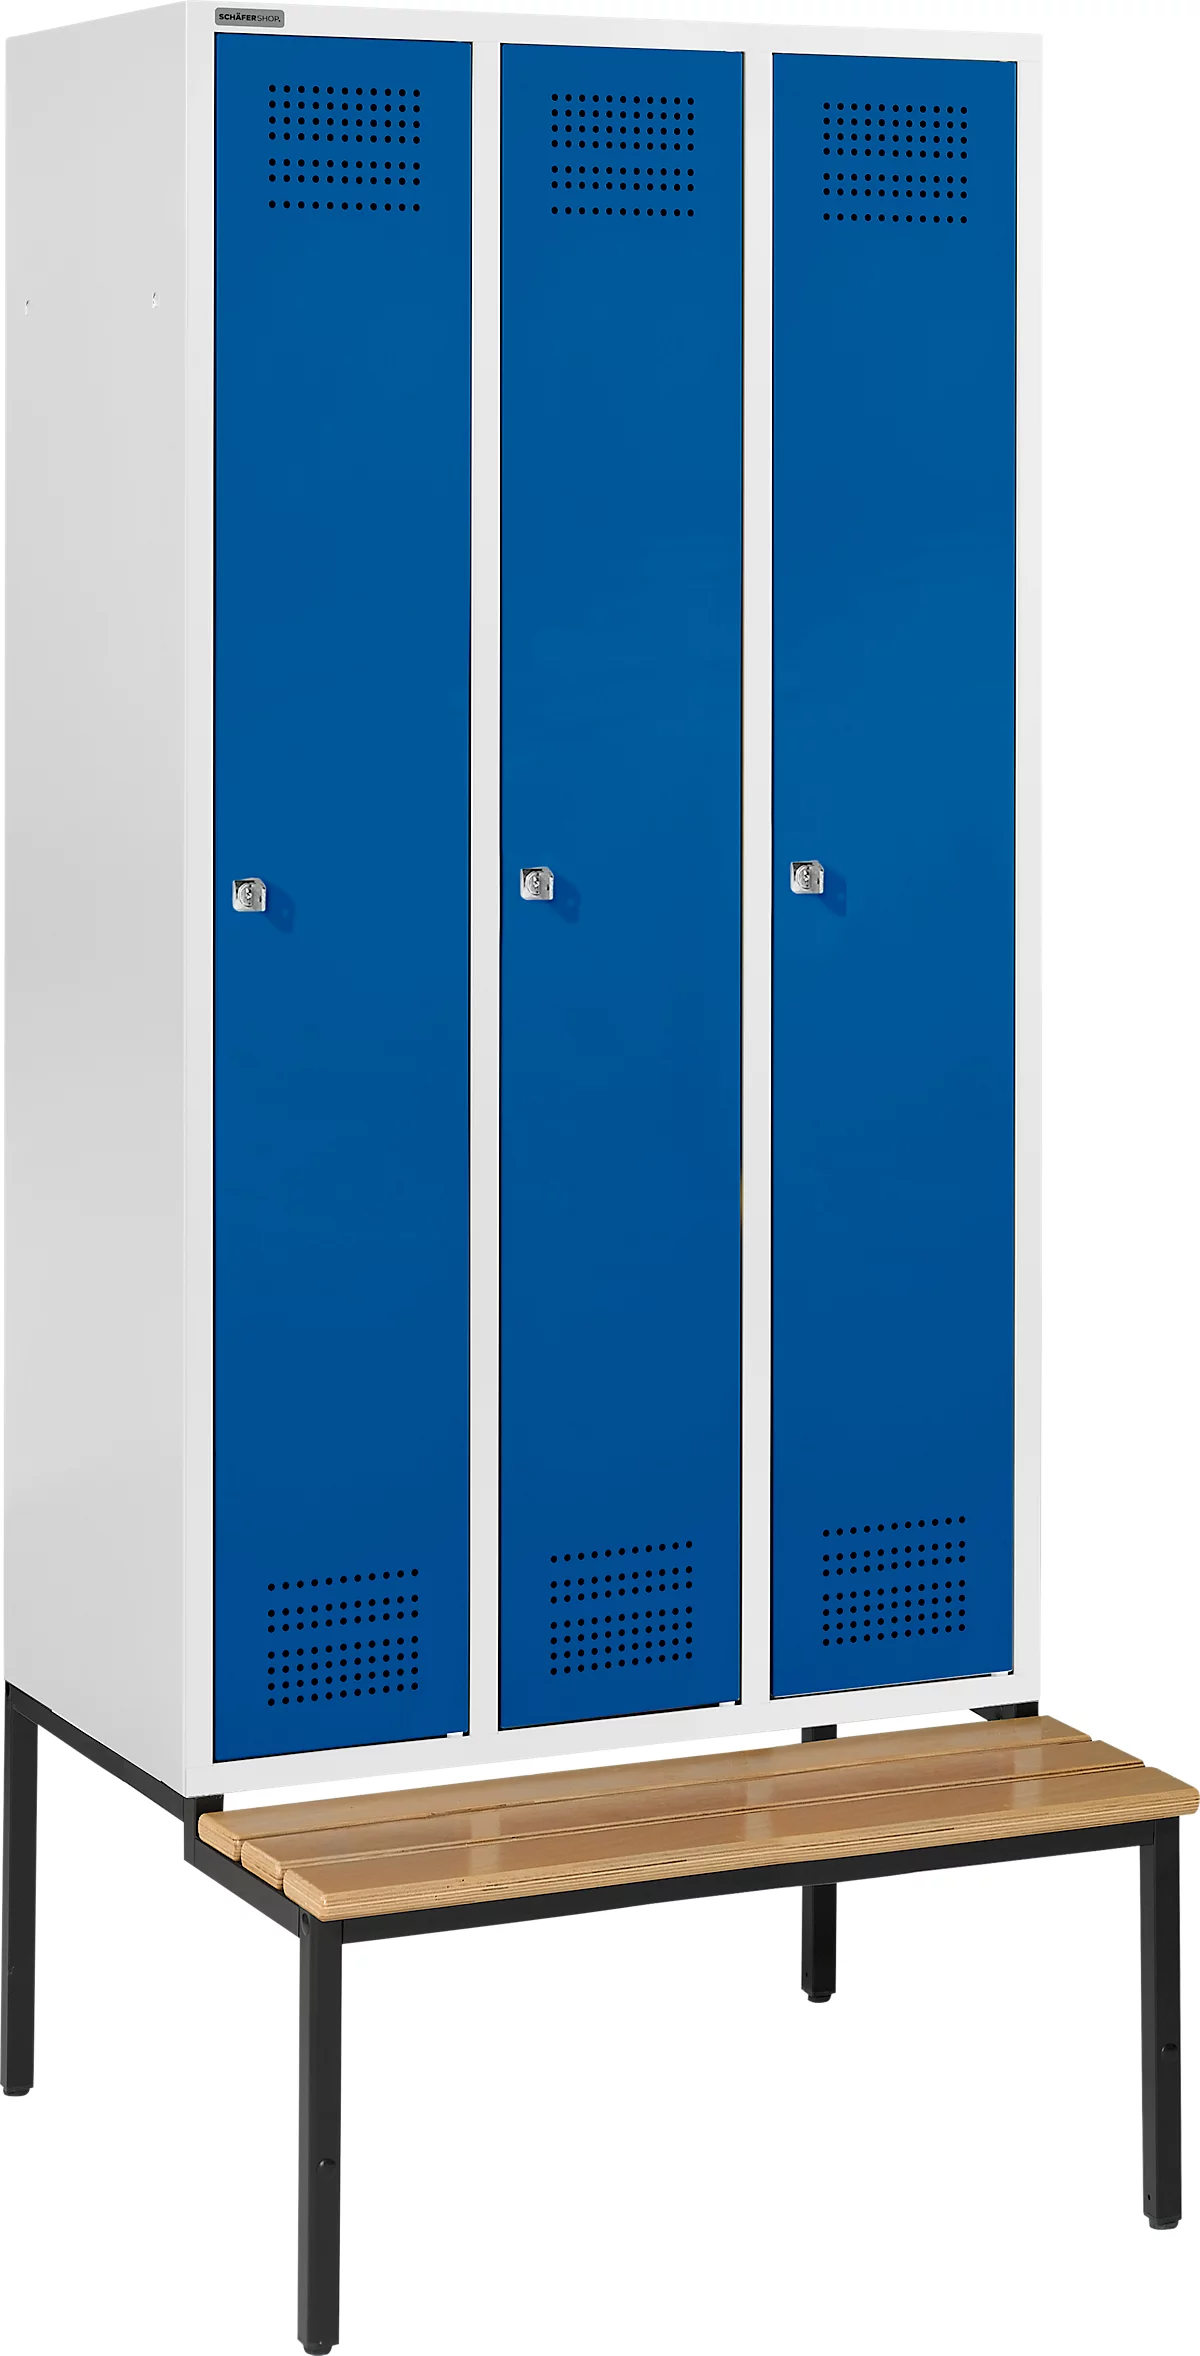 Schäfer Shop Genius Taquilla con banco, 3 compartimentos, cerradura de cilindro, gris luminoso/azul genciana